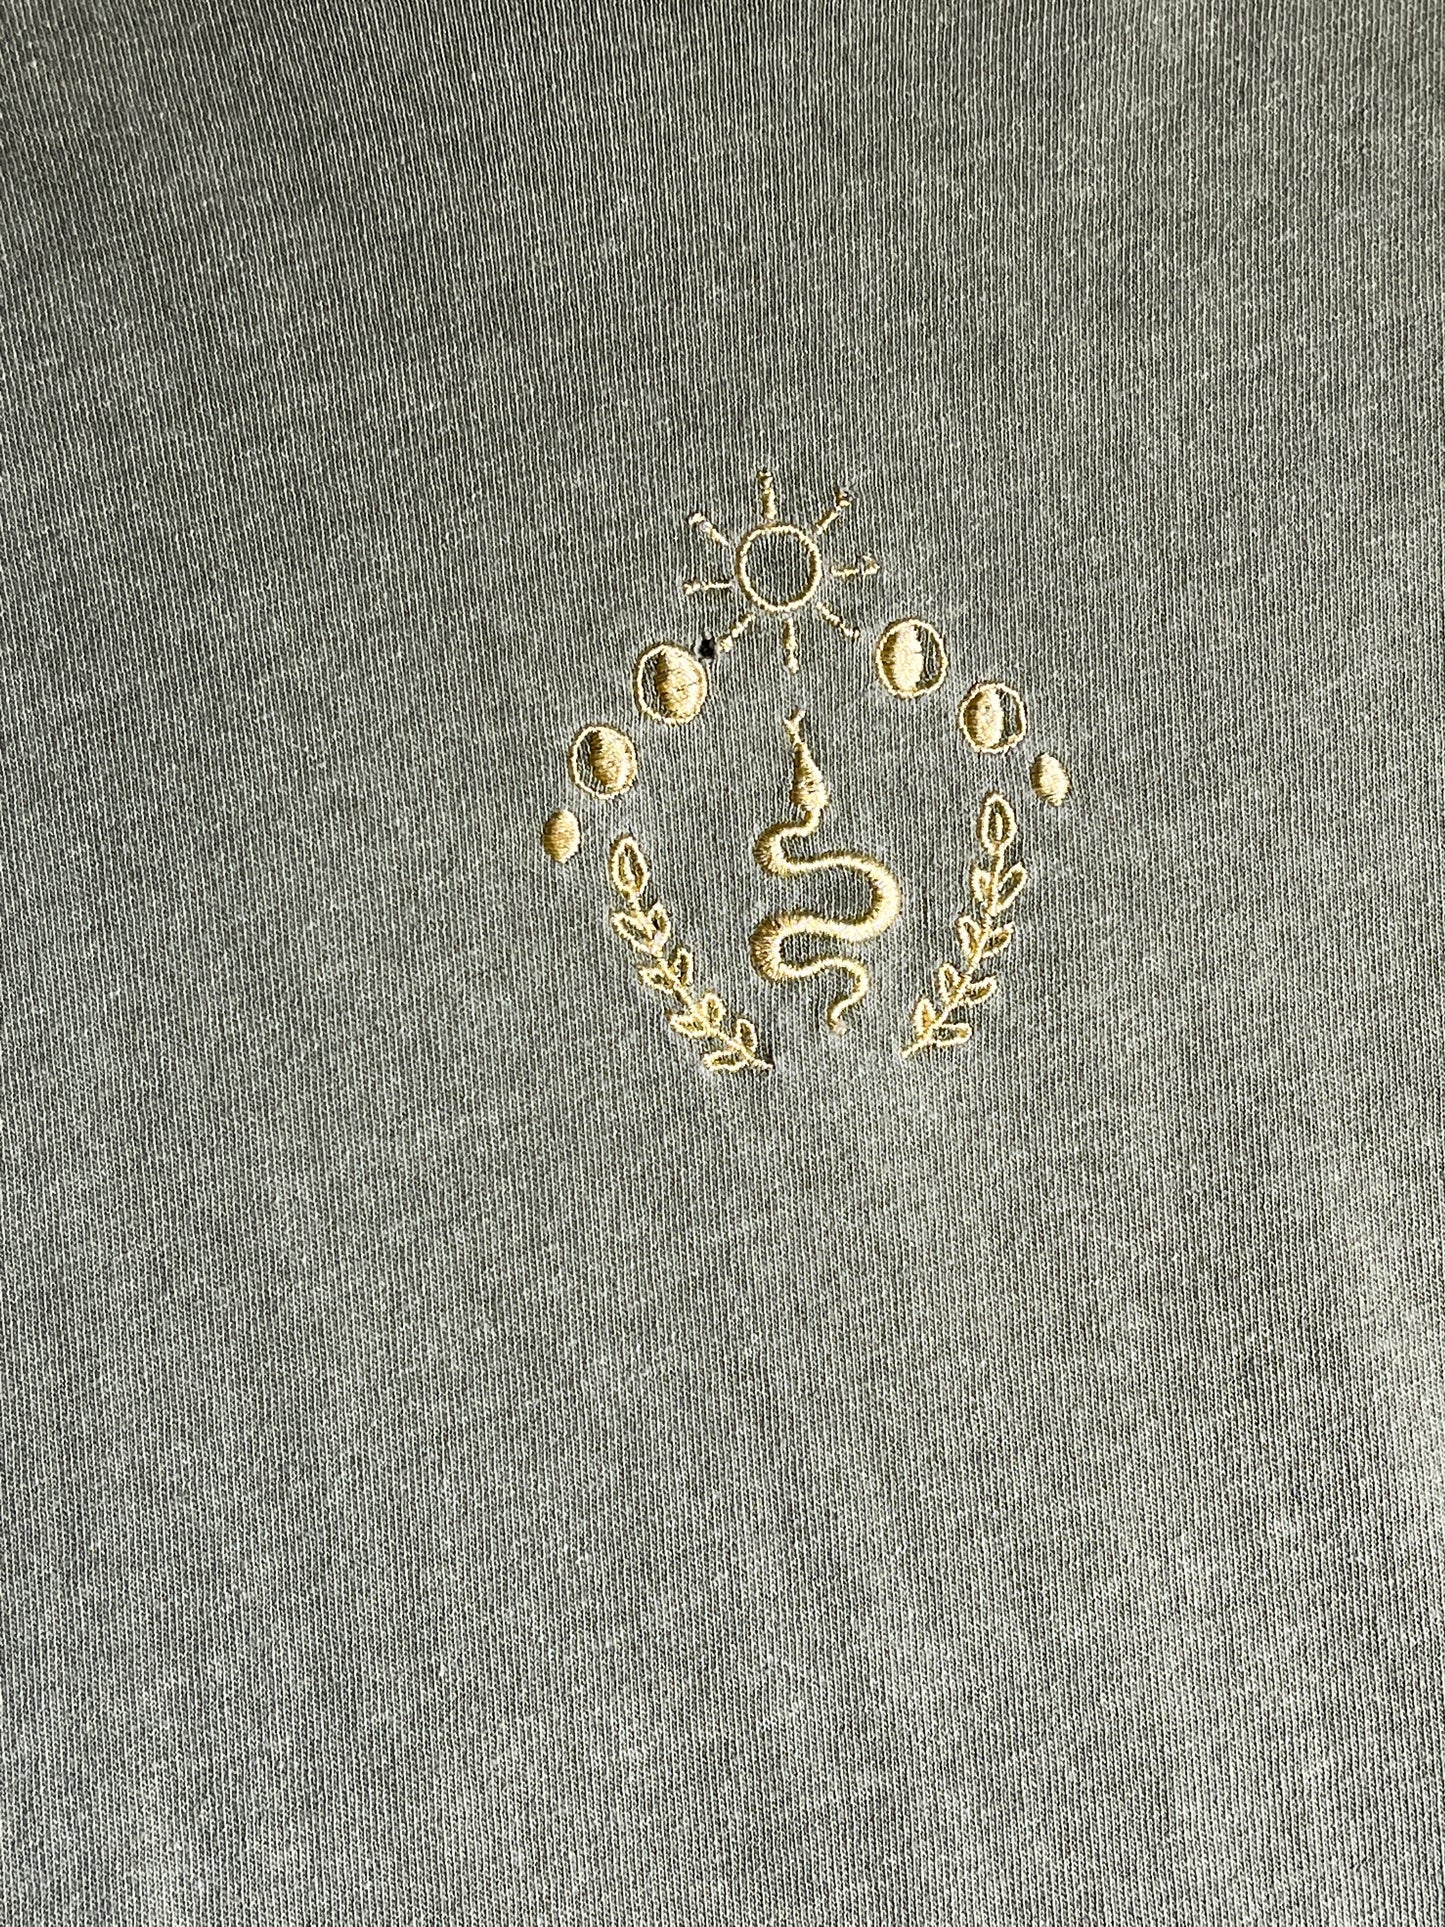 Vintage Snake T-Shirt Embroidered